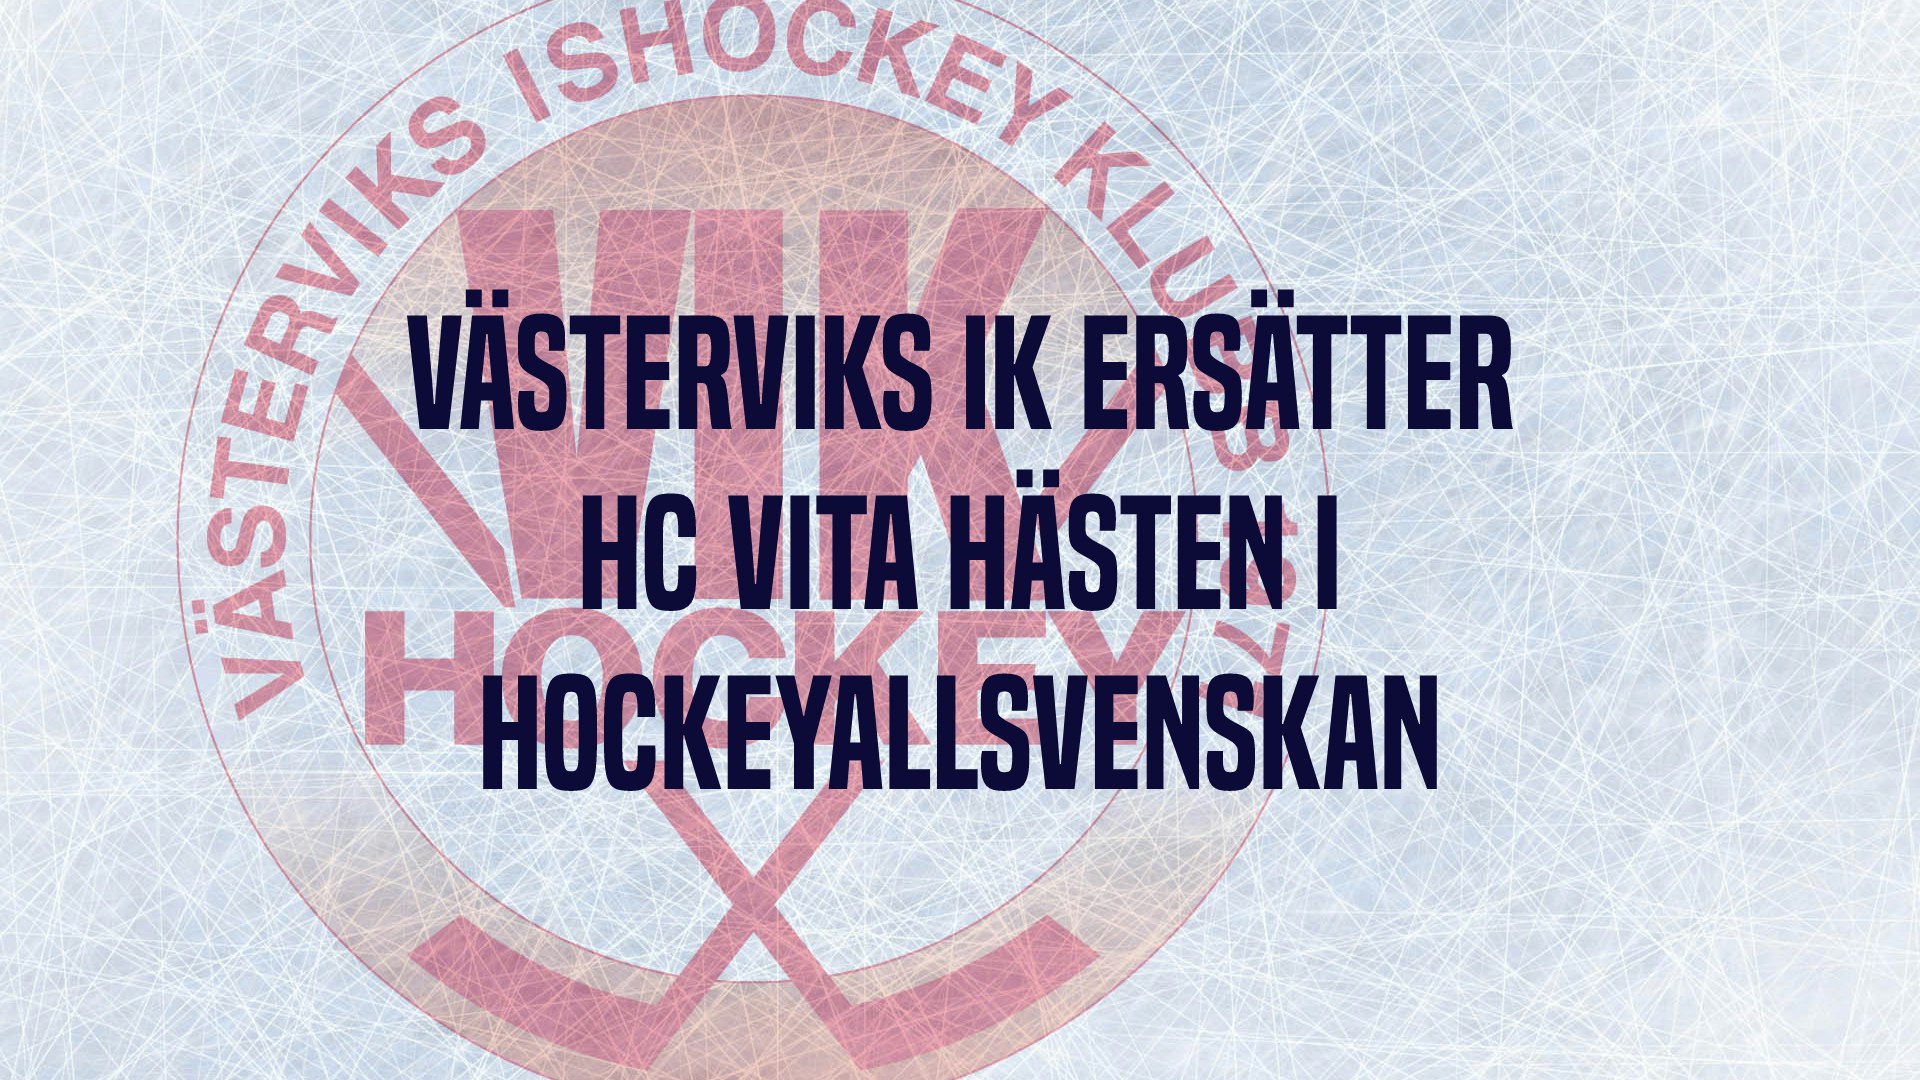 www.vikhockey.se